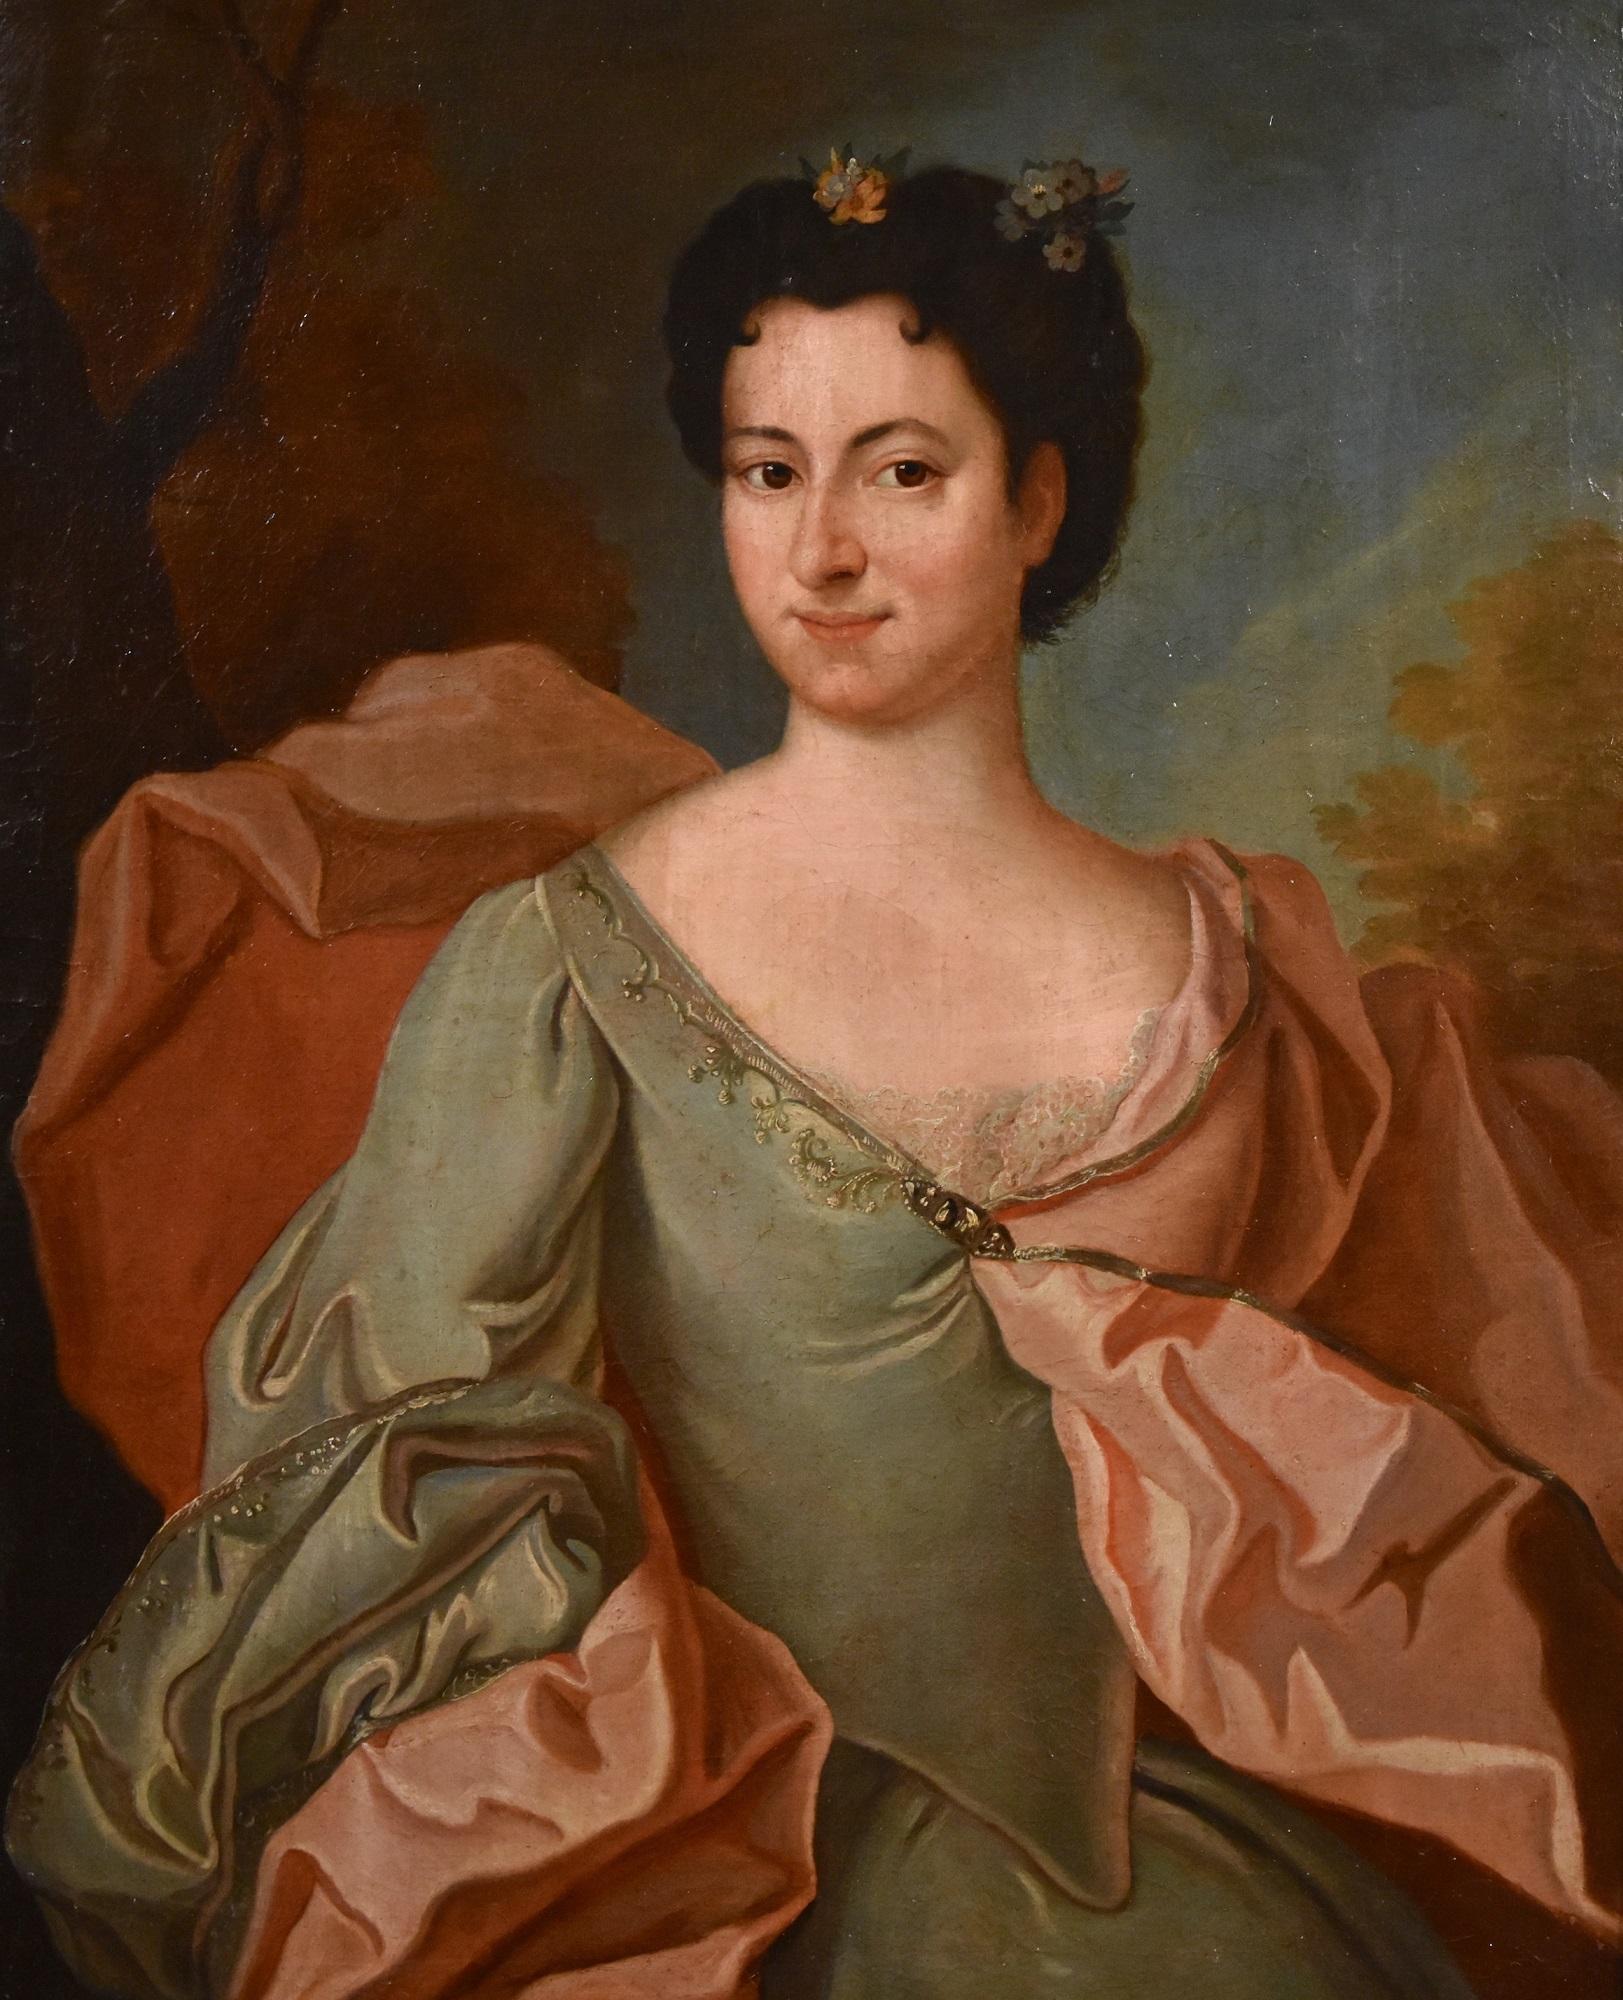 Portrait Lady De Troy Paint Oil on canvas Old master 18th Century French Madame - Painting by François de Troy (Toulouse 1645 - Paris 1730)